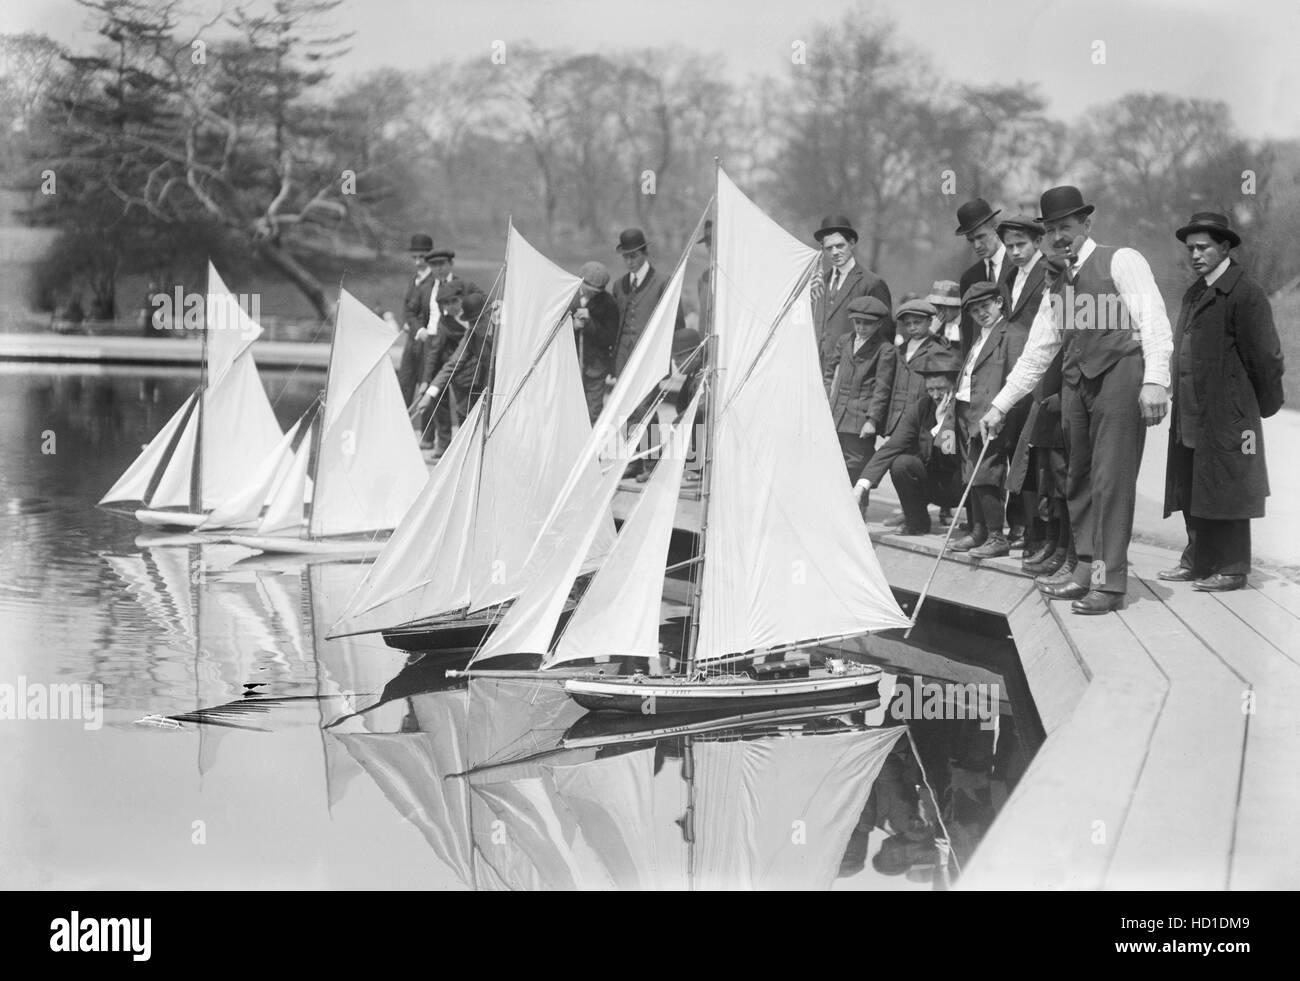 Gruppe von Menschen zu Beginn des Spielzeug Yacht Race, Konservatorium See, Central Park, New York City, New York, USA, Bain Nachrichtendienst, 1915 Stockfoto